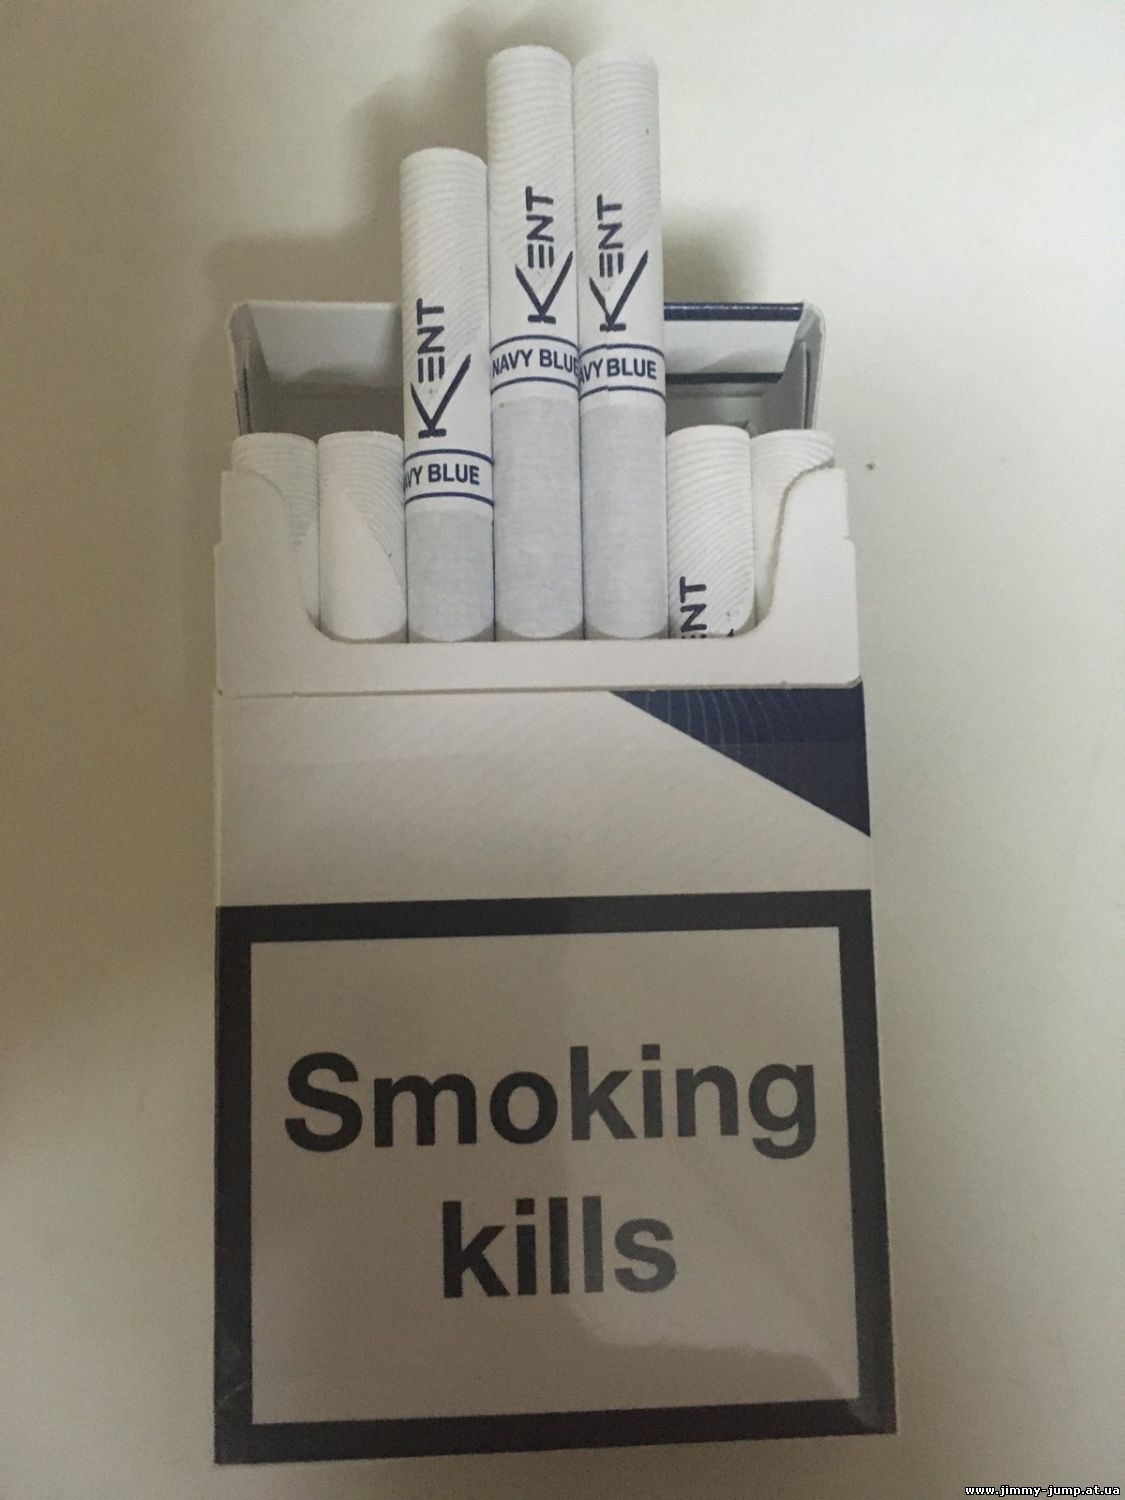 Продам сигареты KENT 8 (с турбо фильтром)